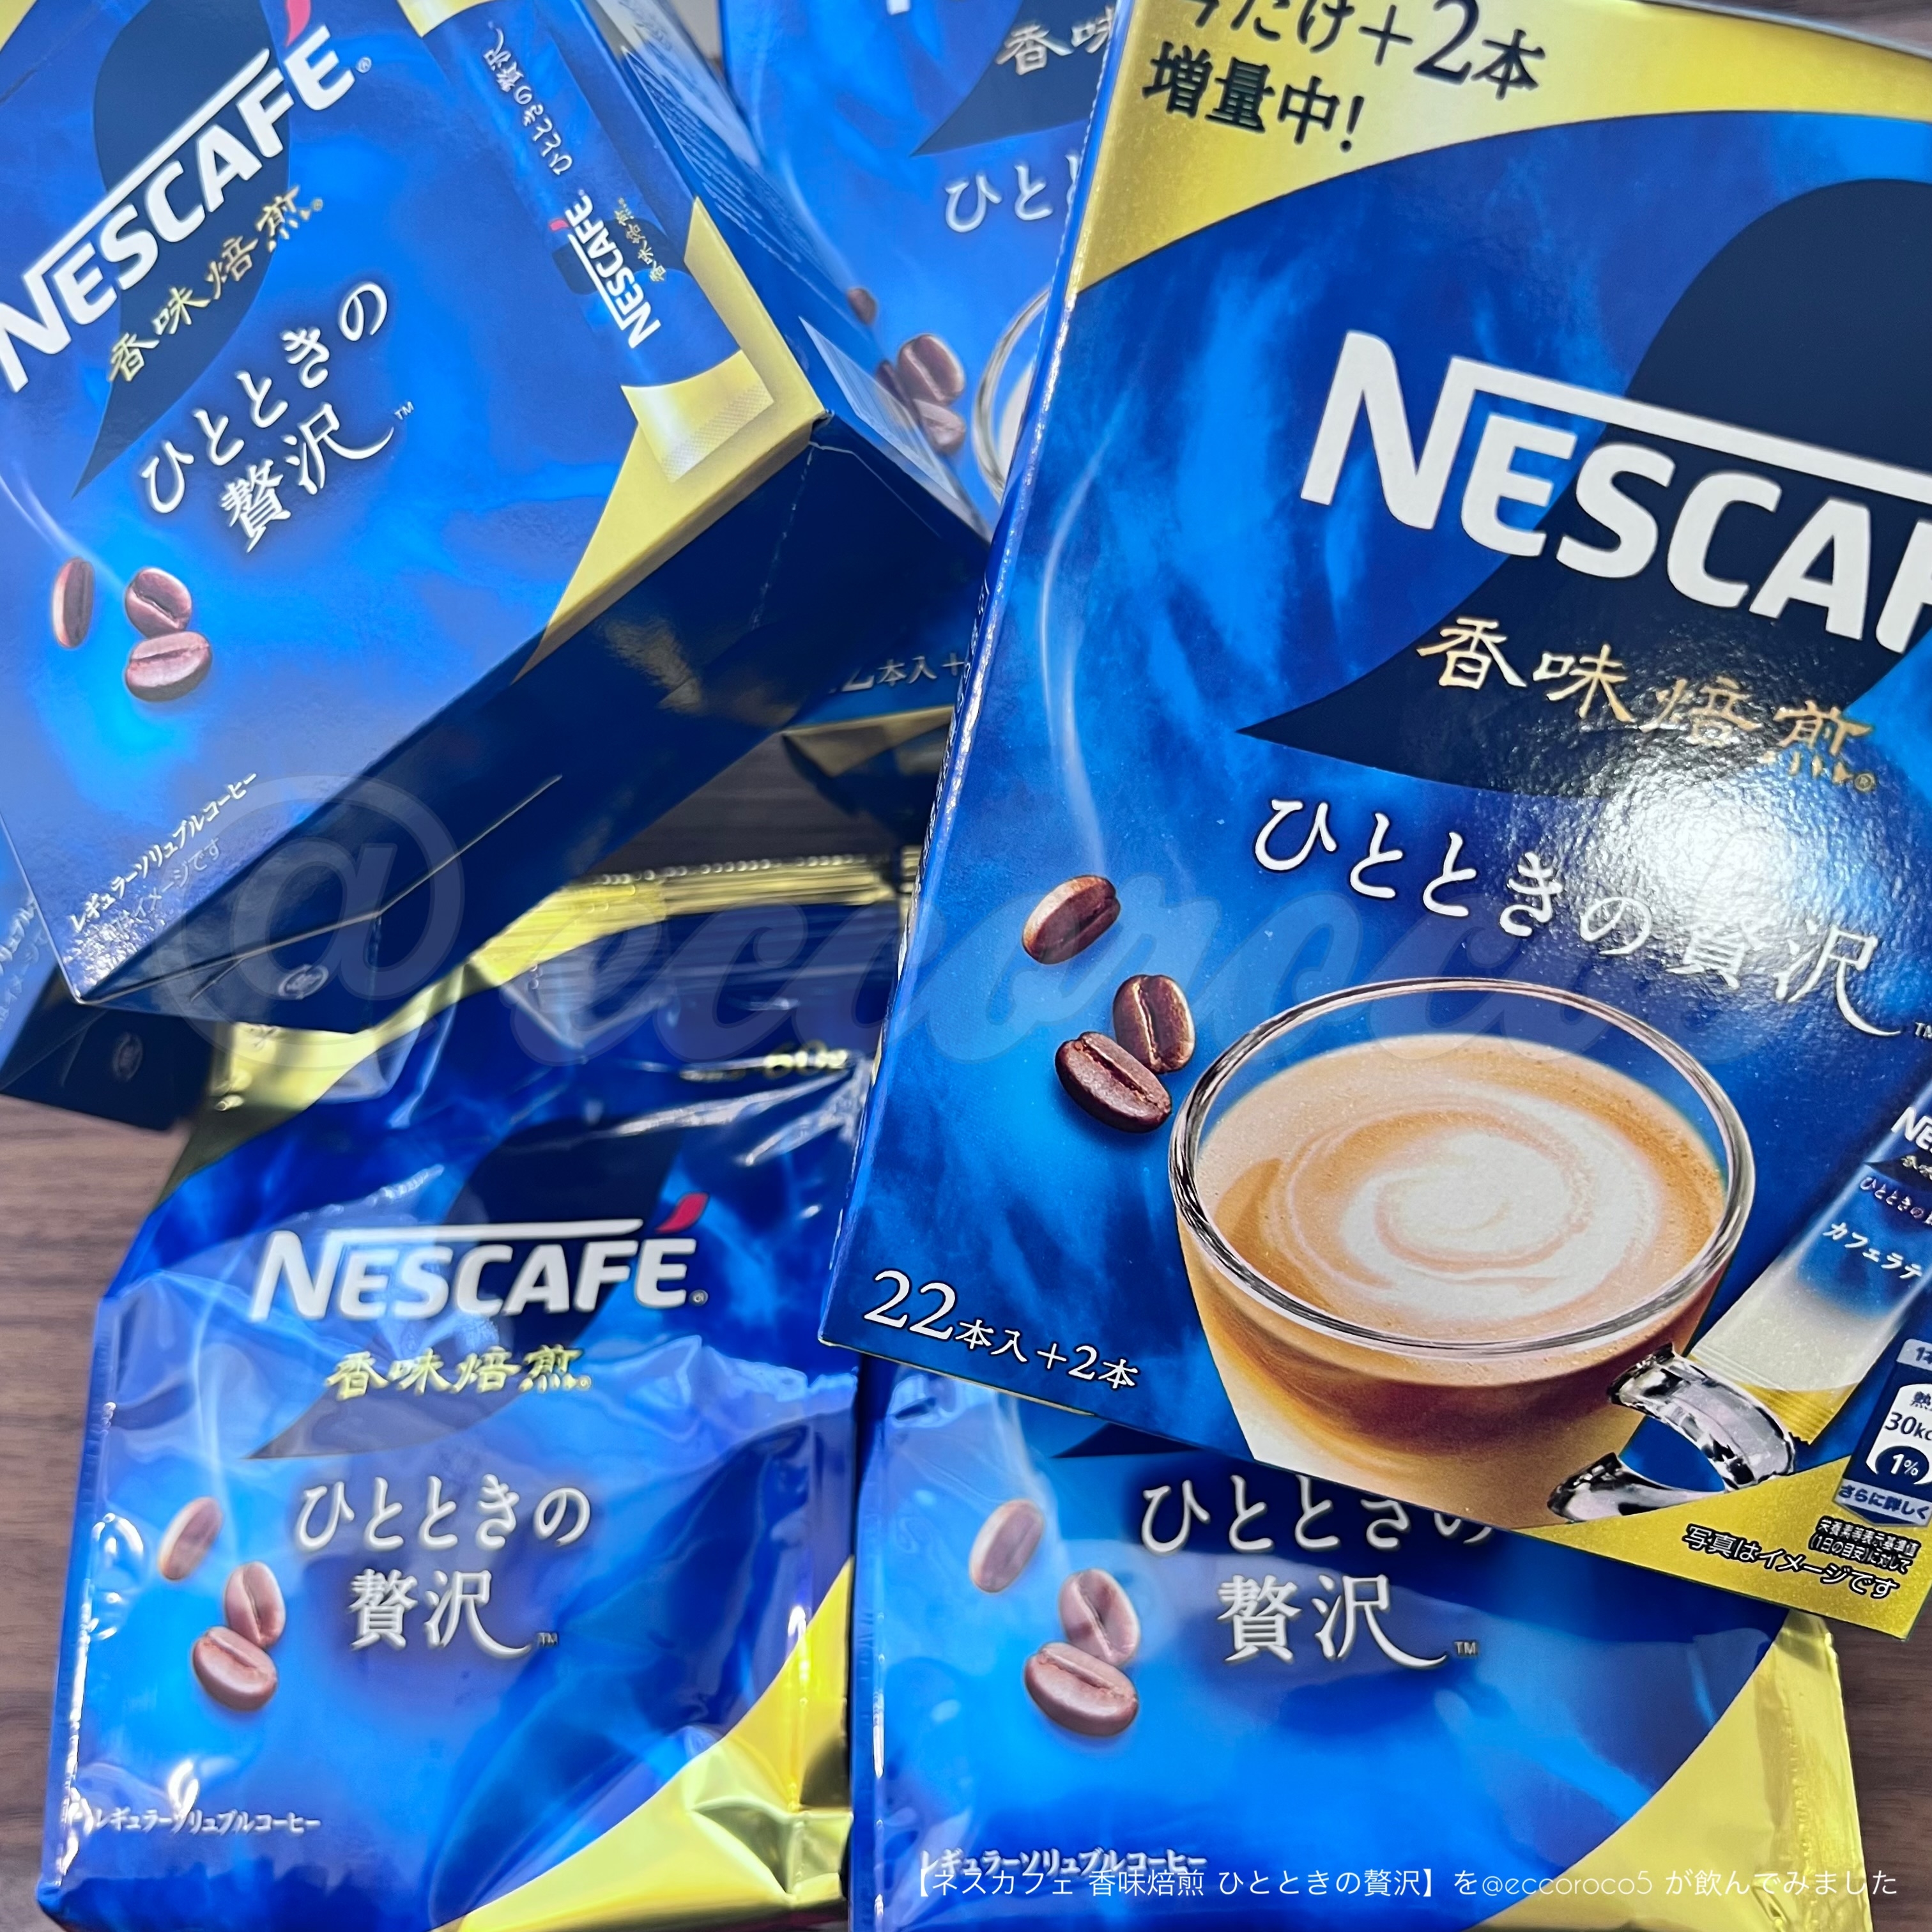 Nestle(ネスレ) ネスカフェ 香味焙煎 ひとときの贅沢 スティックコーヒーの良い点・メリットに関する@eccoroco5さんの口コミ画像1